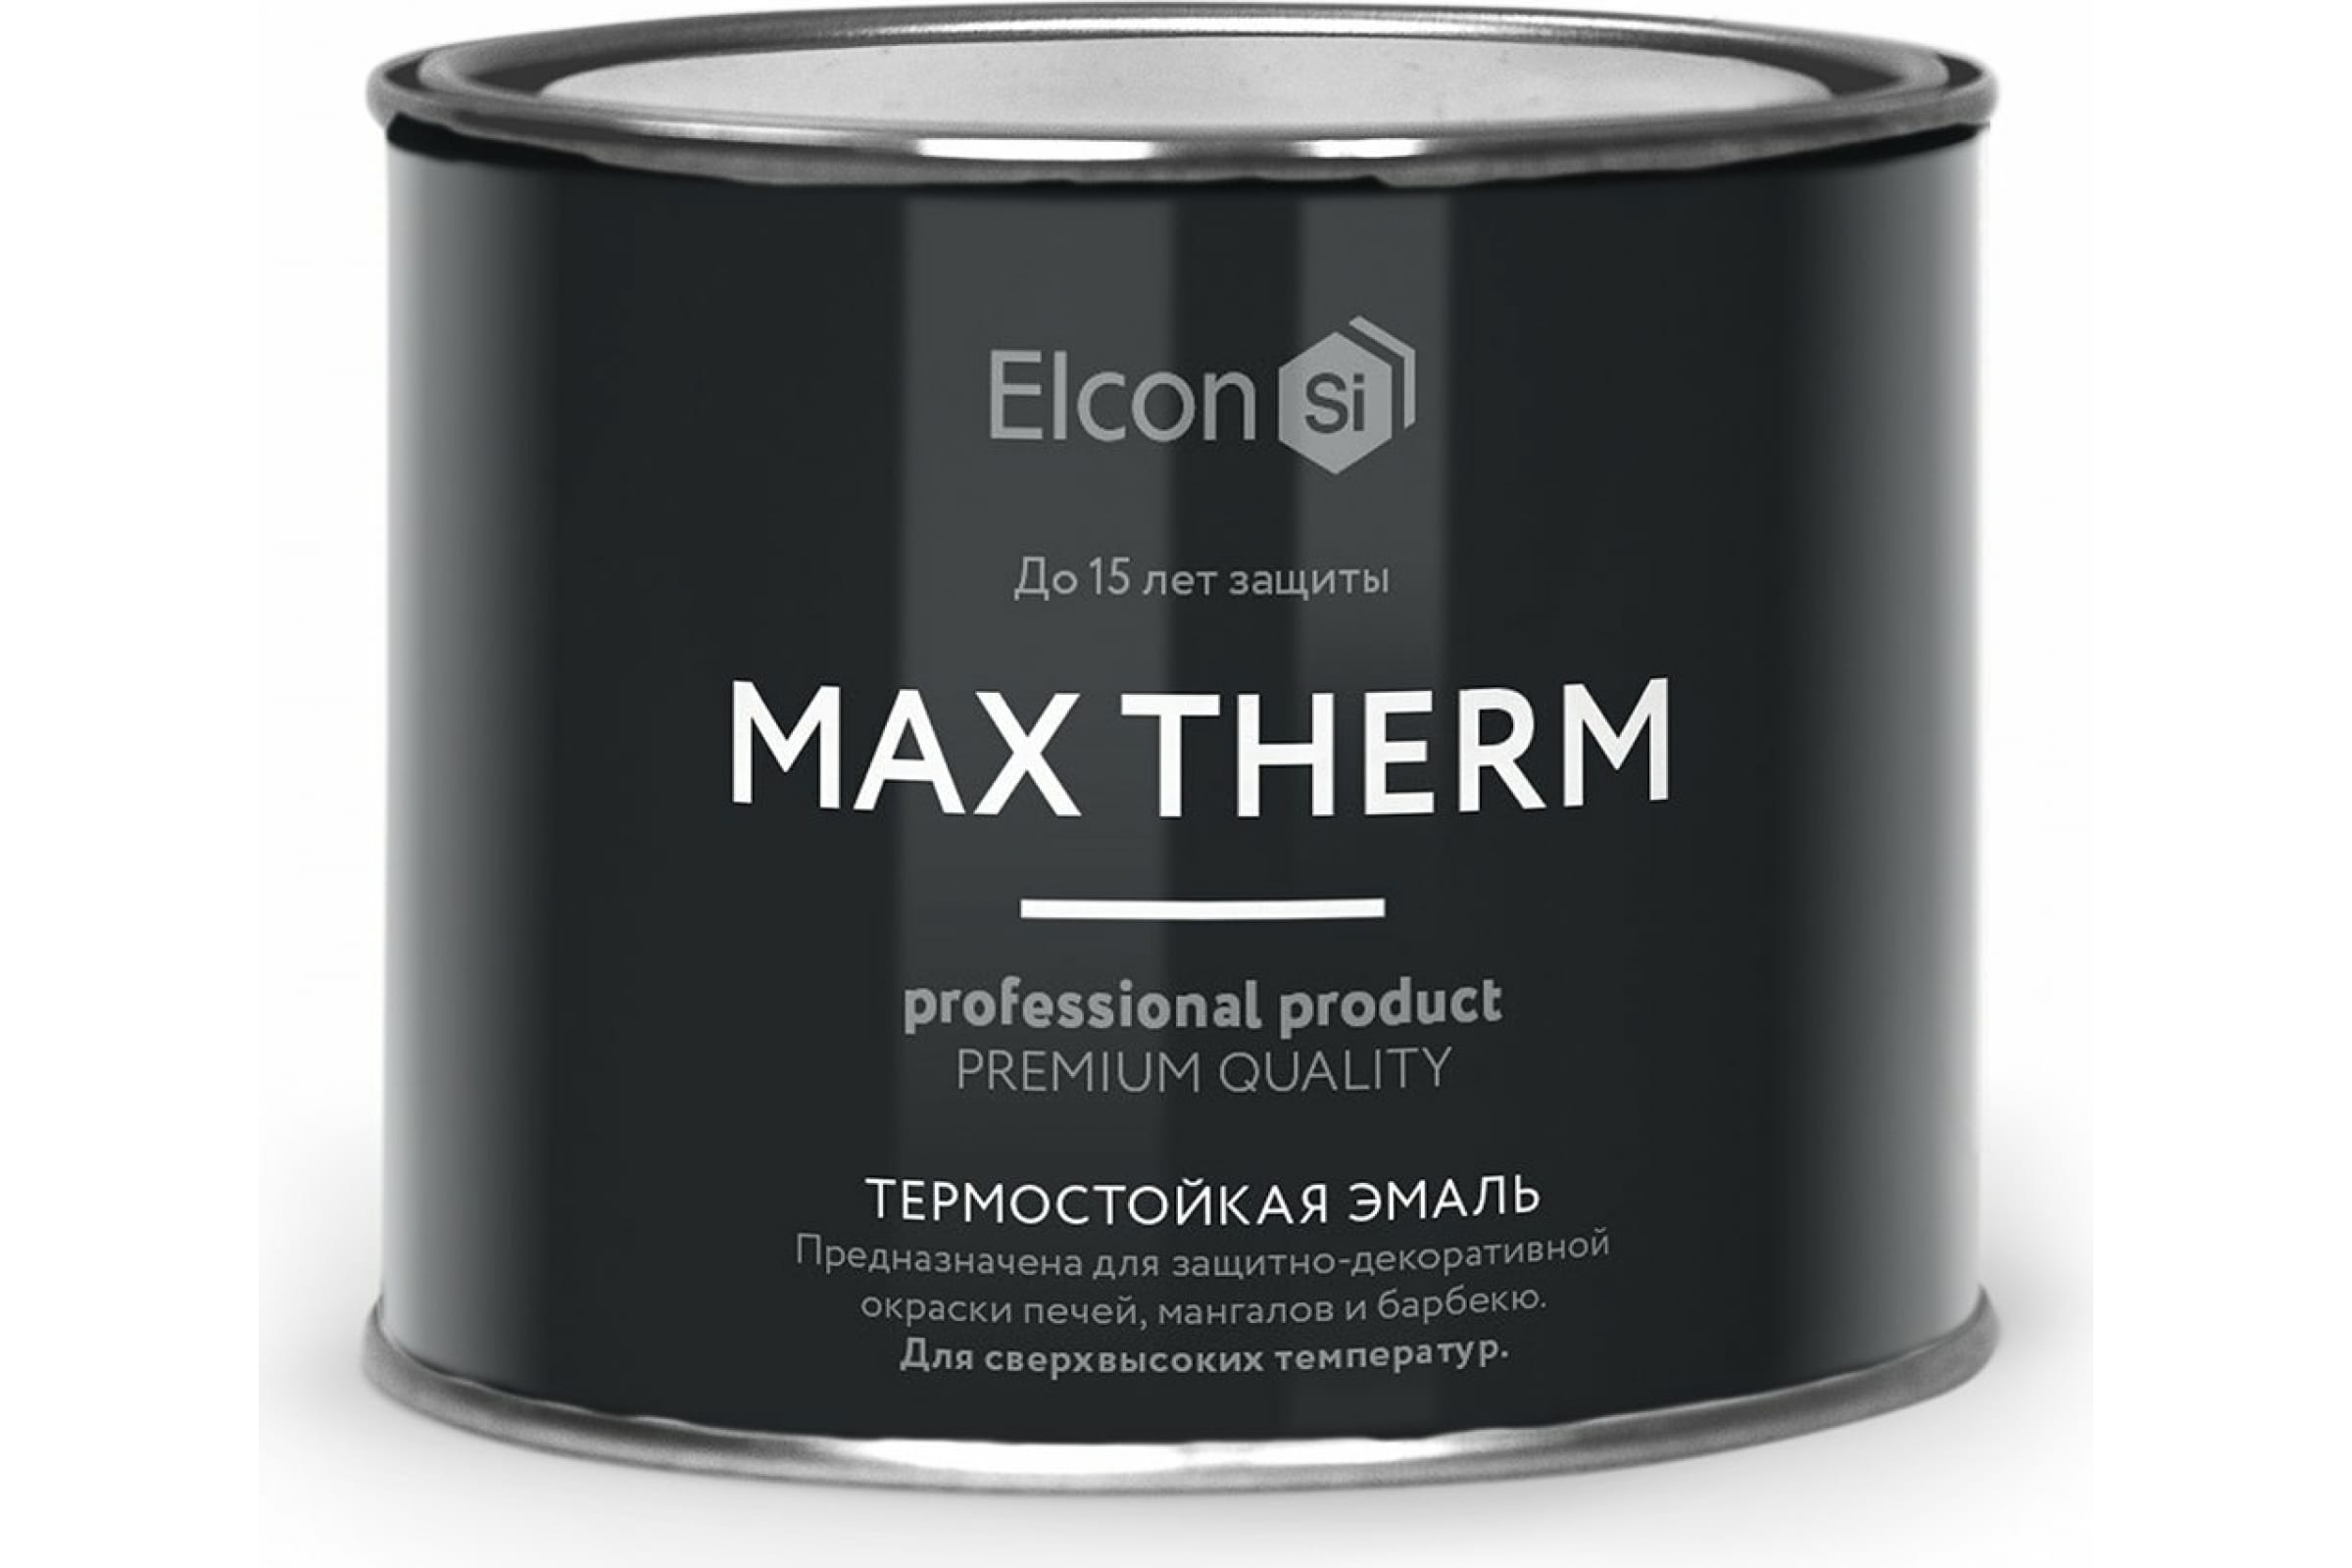 Термостойкая антикоррозионная эмаль Elcon Max Therm до 400 градусов, 0,4 л, красная термостойкая антикоррозионная эмаль elcon max therm до 700 градусов 0 4 л серебристая